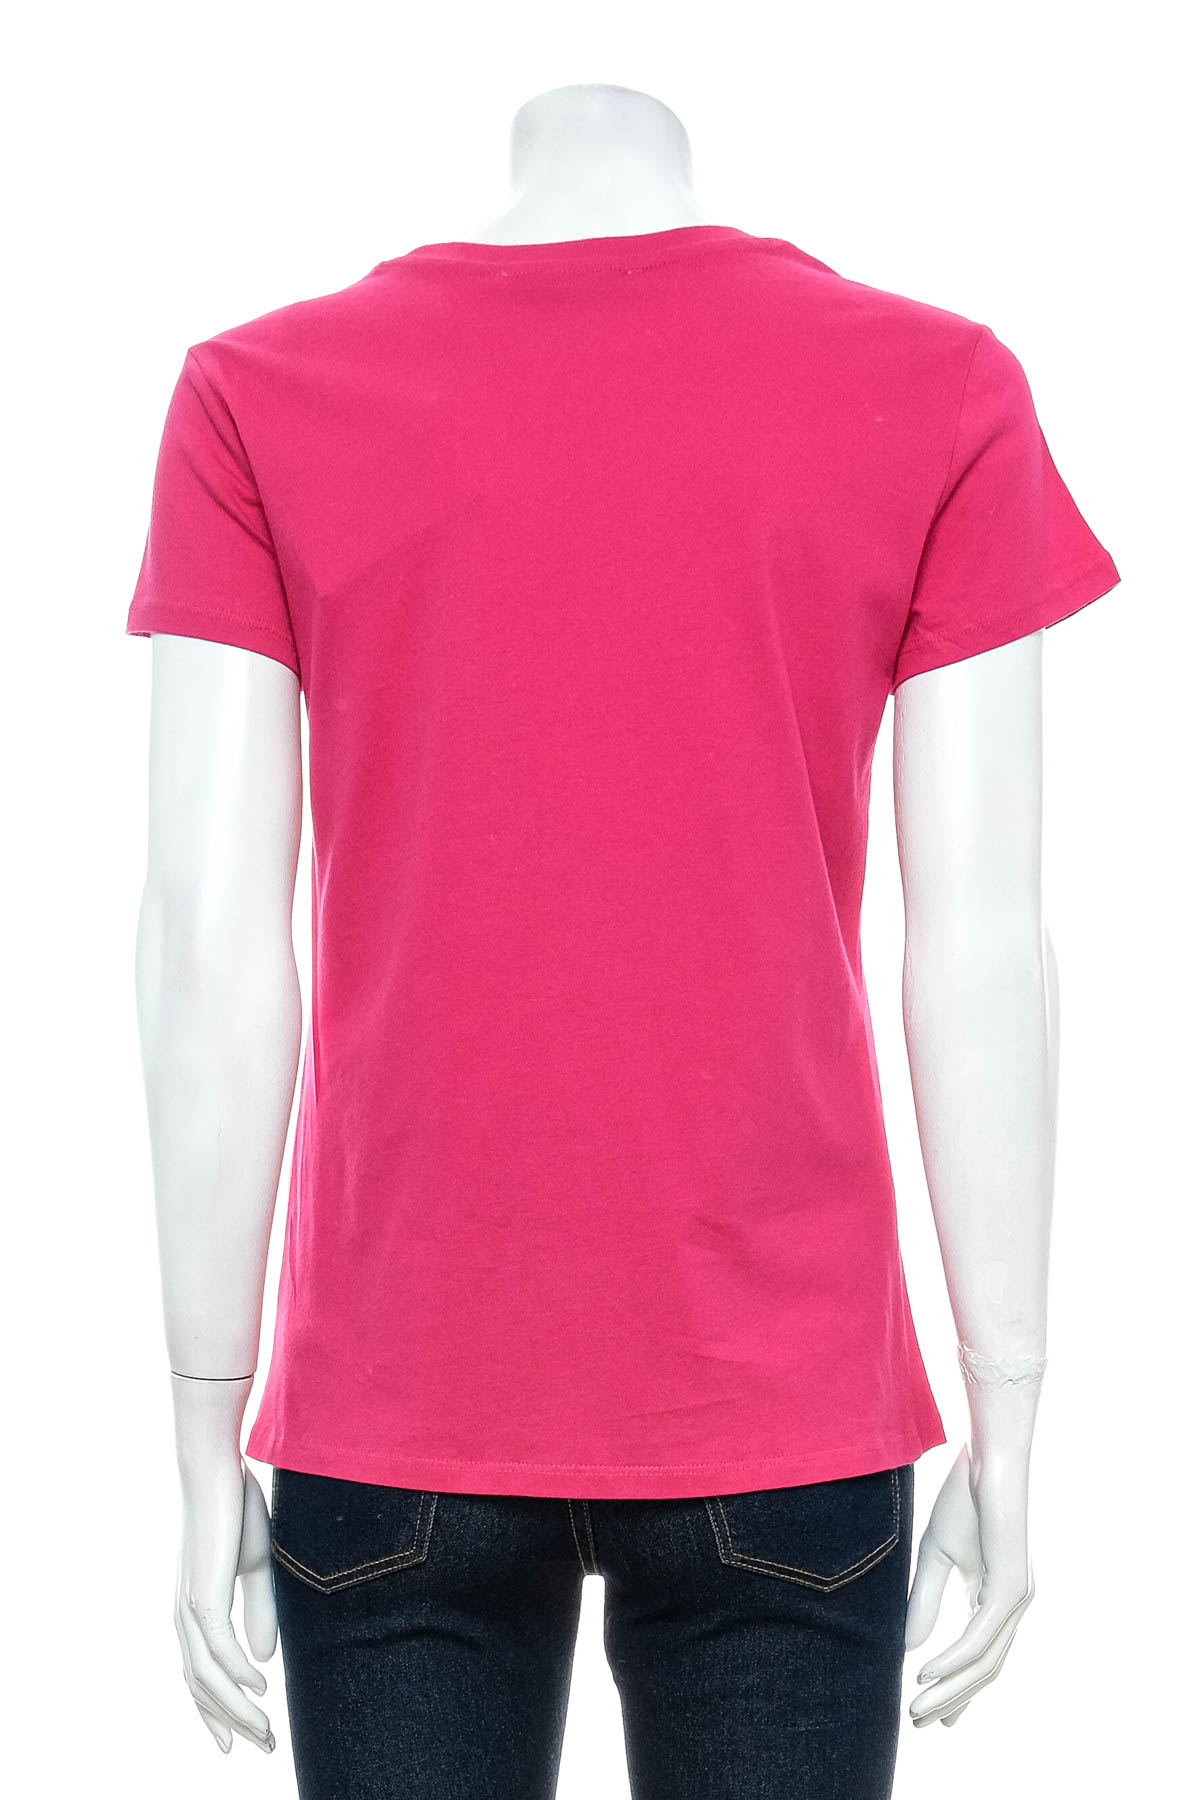 Women's t-shirt - Target - 1